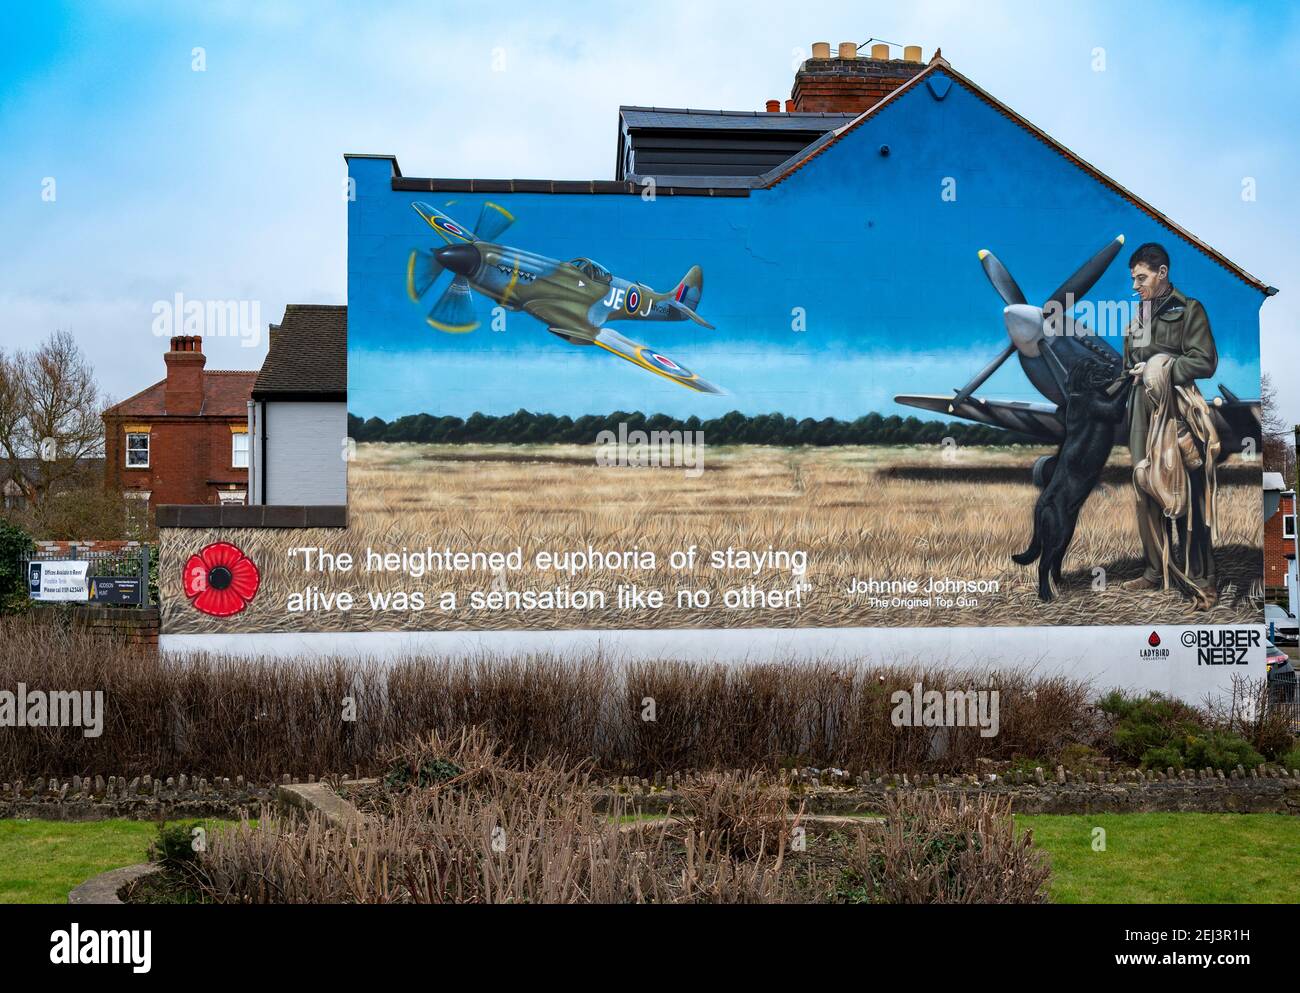 Loughborough, Leicestershire, Großbritannien. 21st. Februar 2021. Ein Wandgemälde an der Seite eines Gebäudes in Loughborough zeigt den legendären Air Vice Marshal James Edgar ‘Johnnie’ Johnson, der vor Ort geboren wurde. Das Kunstwerk ist eine Hommage an den Piloten der RAF Spitfire aus dem Zweiten Weltkrieg, besser bekannt als Johnnie Johnson, der während des Krieges mehr feindliche Flugzeuge abgeschossen hat als jeder andere alliierte Kampfflugzeuge und rund 700 Einsatzflugzeuge geflogen hat. Das von Buber Nebz gemalte Wandbild ist Teil des Ladybird Collective, das sich hinter mehreren Kunstwerken in Loughborough befindet. Kredit: Matt Limb/Alamy Live Nachrichten Stockfoto